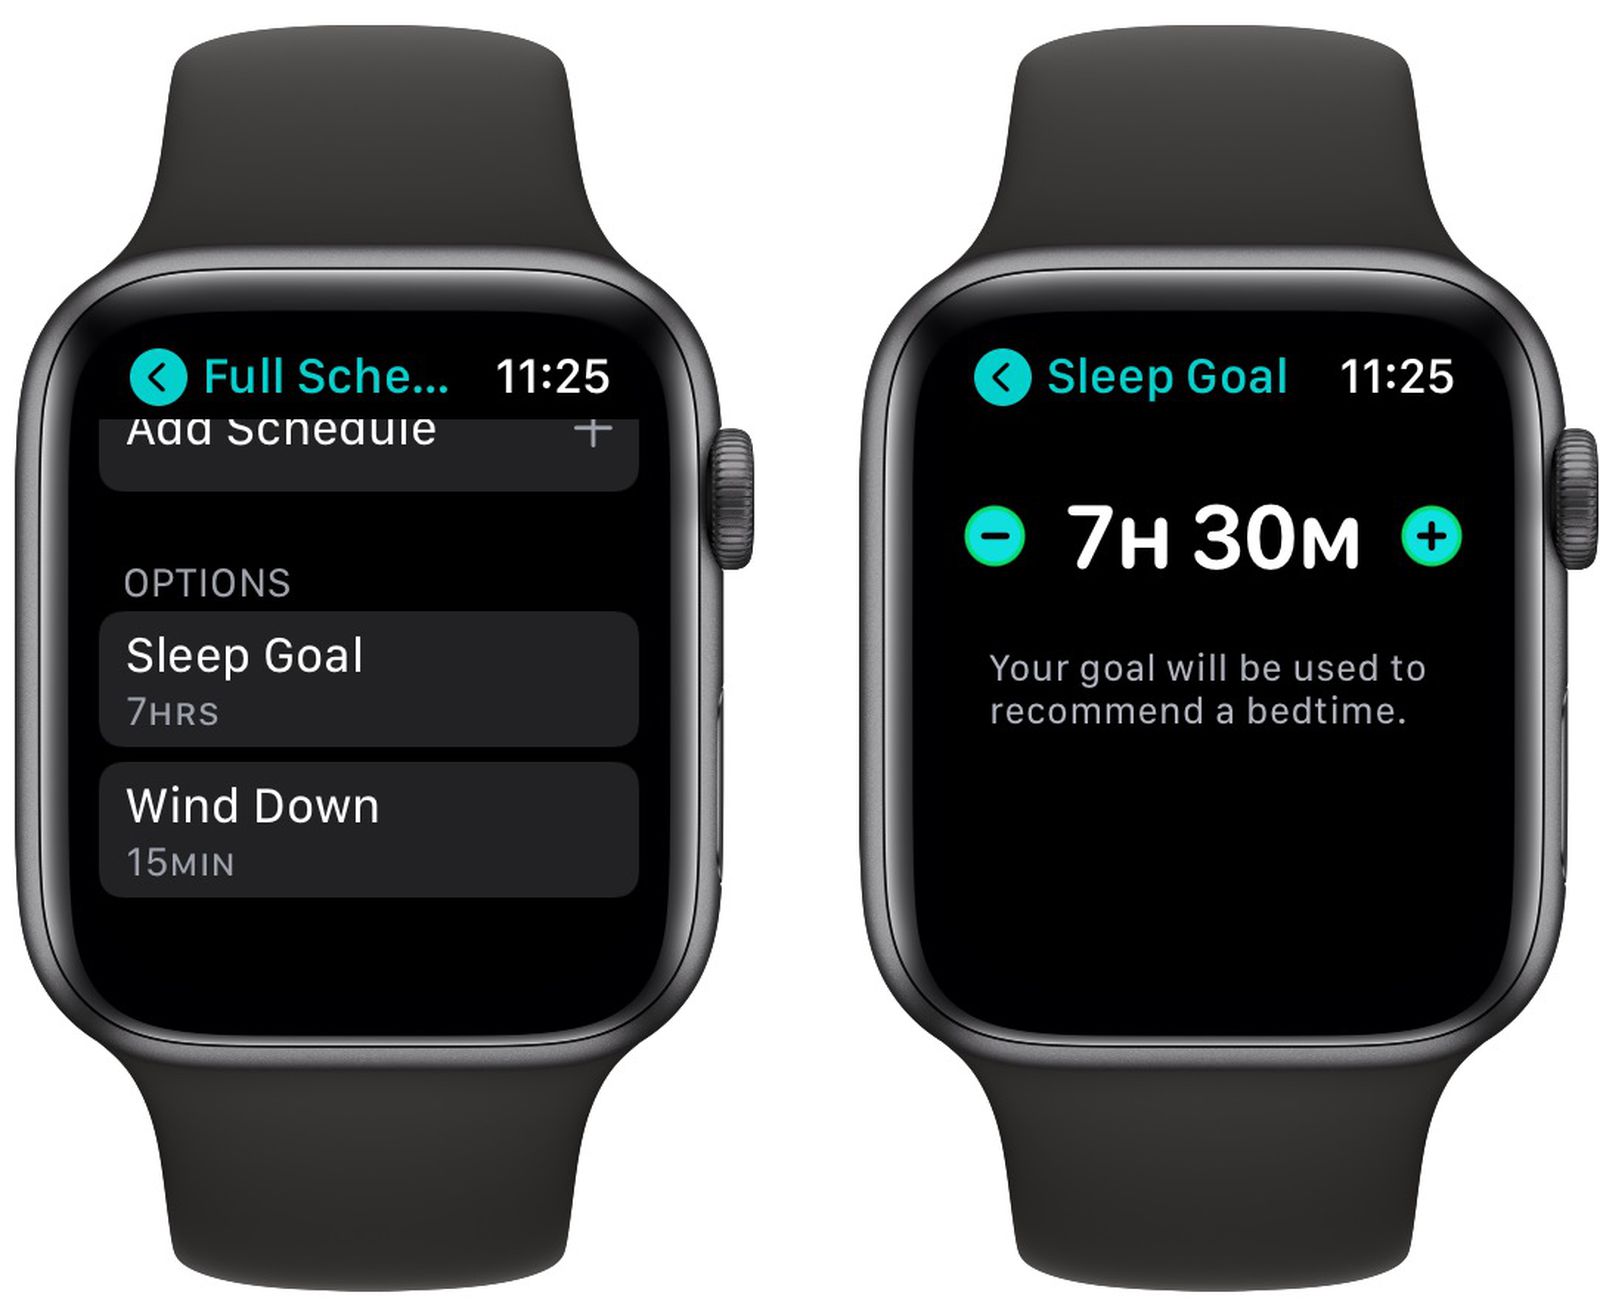 میزان خواب با Sleep Goal در Apple Watch